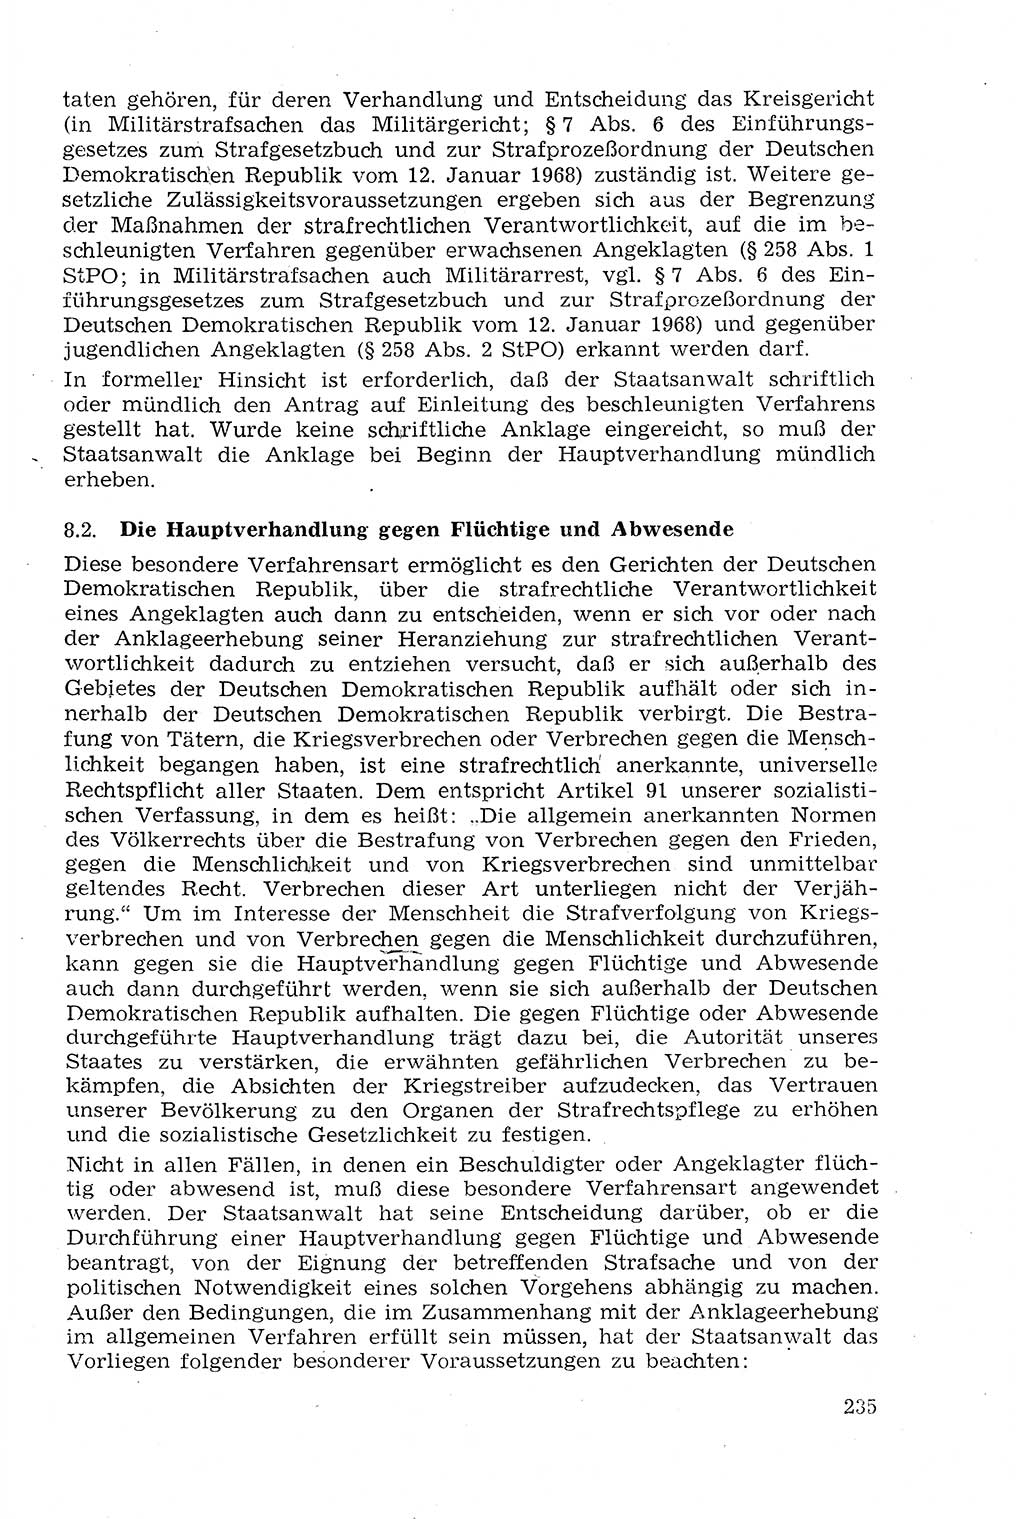 Strafprozeßrecht der DDR (Deutsche Demokratische Republik), Lehrmaterial 1969, Seite 235 (Strafprozeßr. DDR Lehrmat. 1969, S. 235)